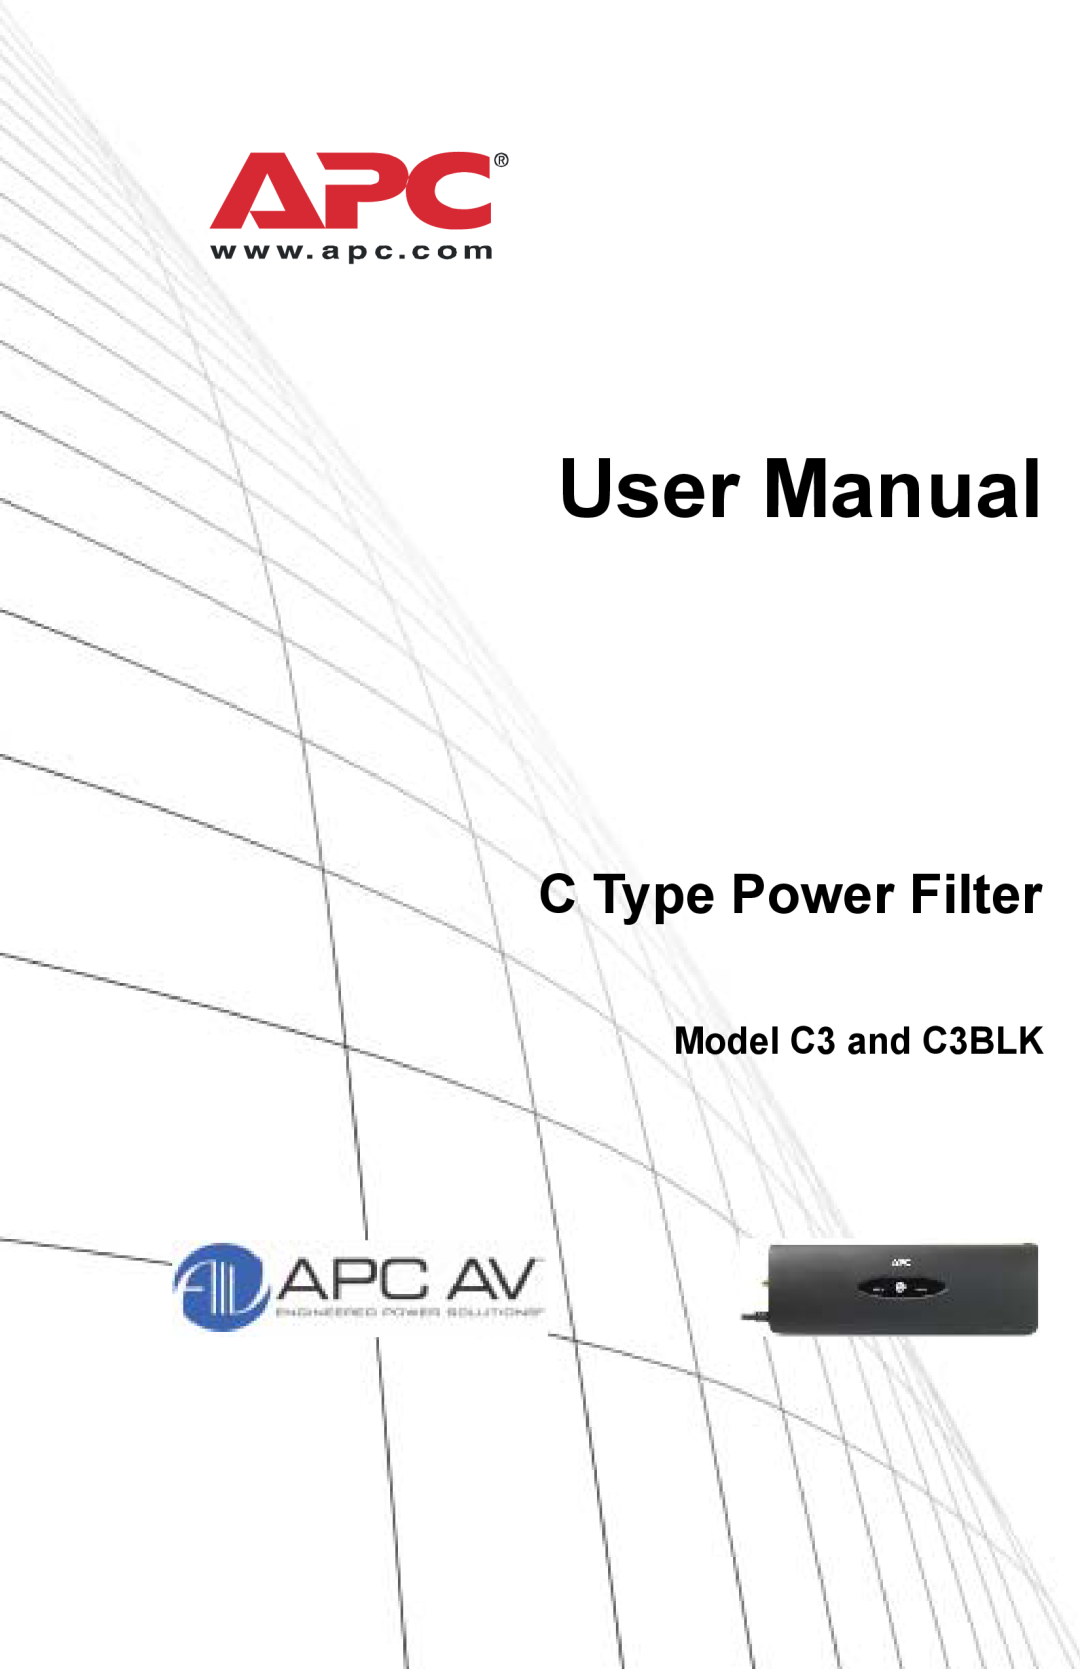 APC Model C3 and C3BLK user manual User Manual, C Type Power Filter 